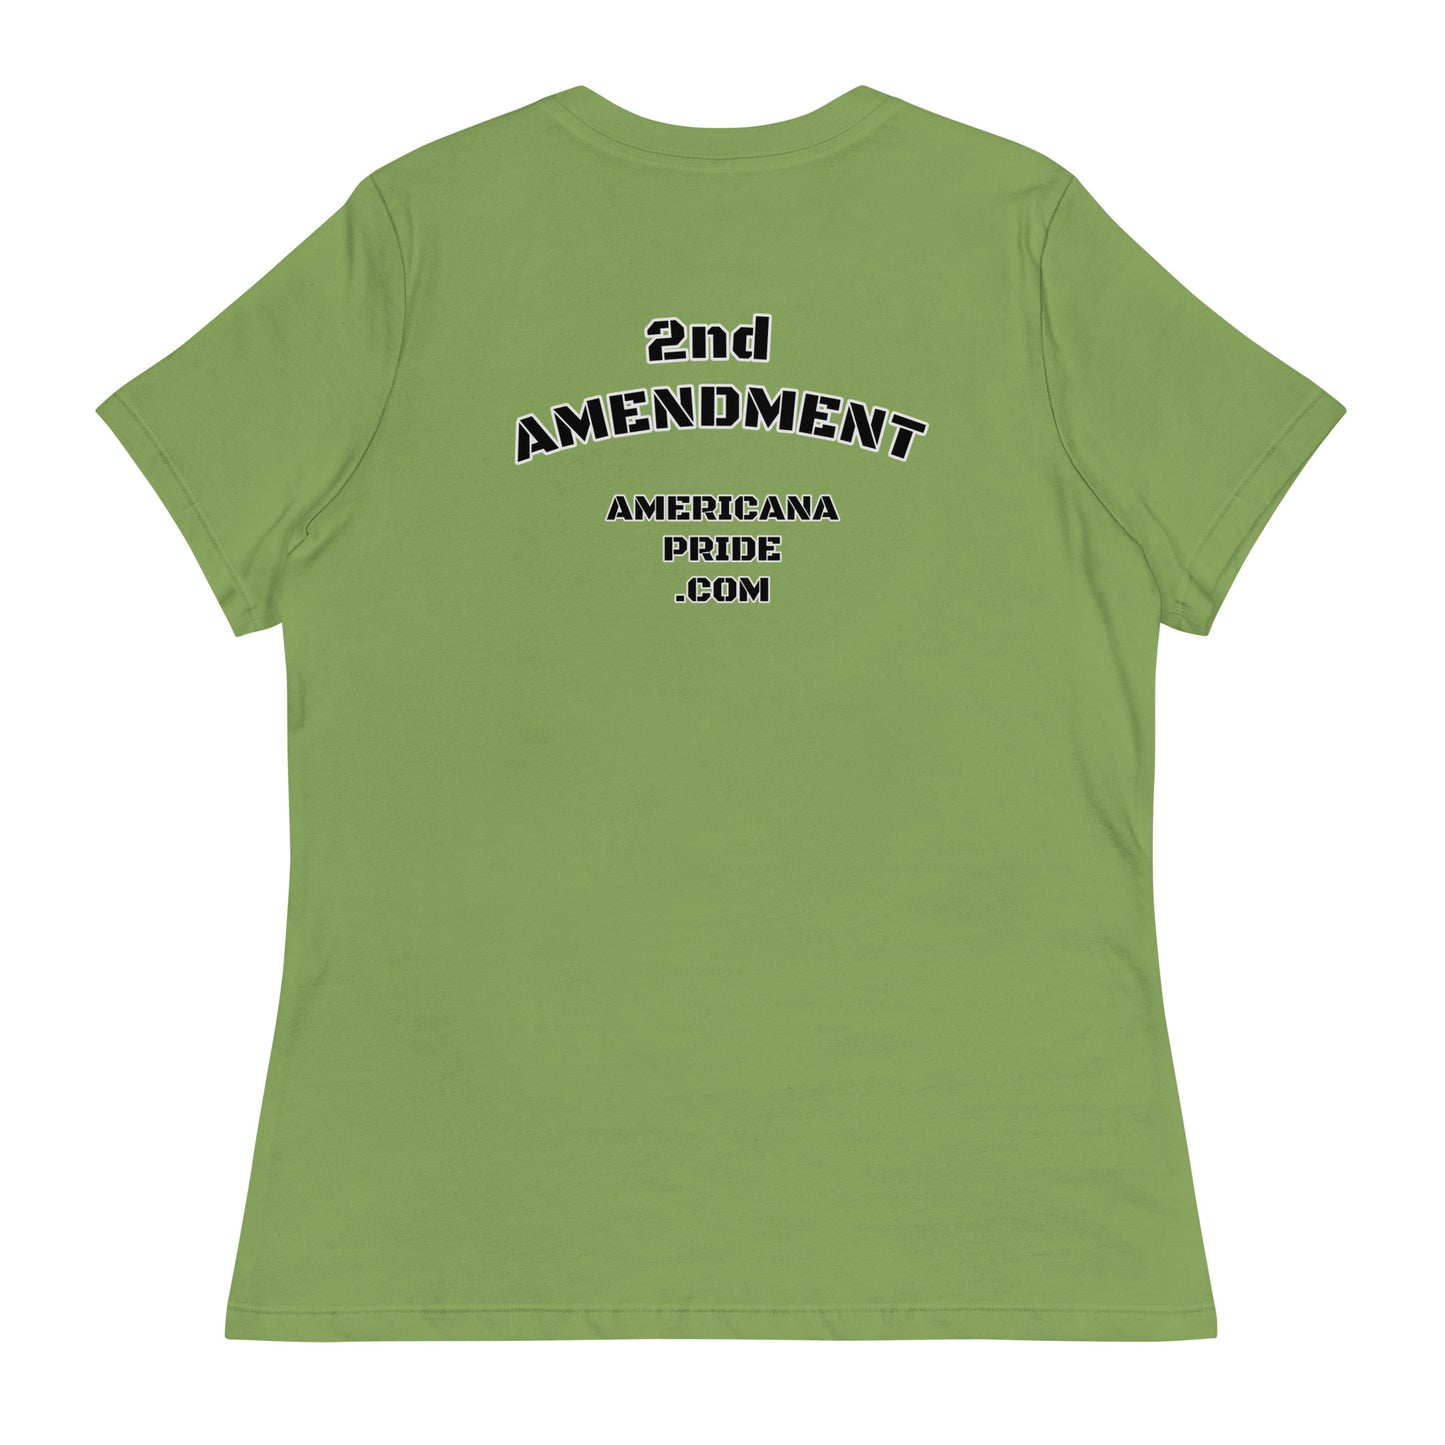 Proud American Gun Owner Women's Relaxed T-Shirt